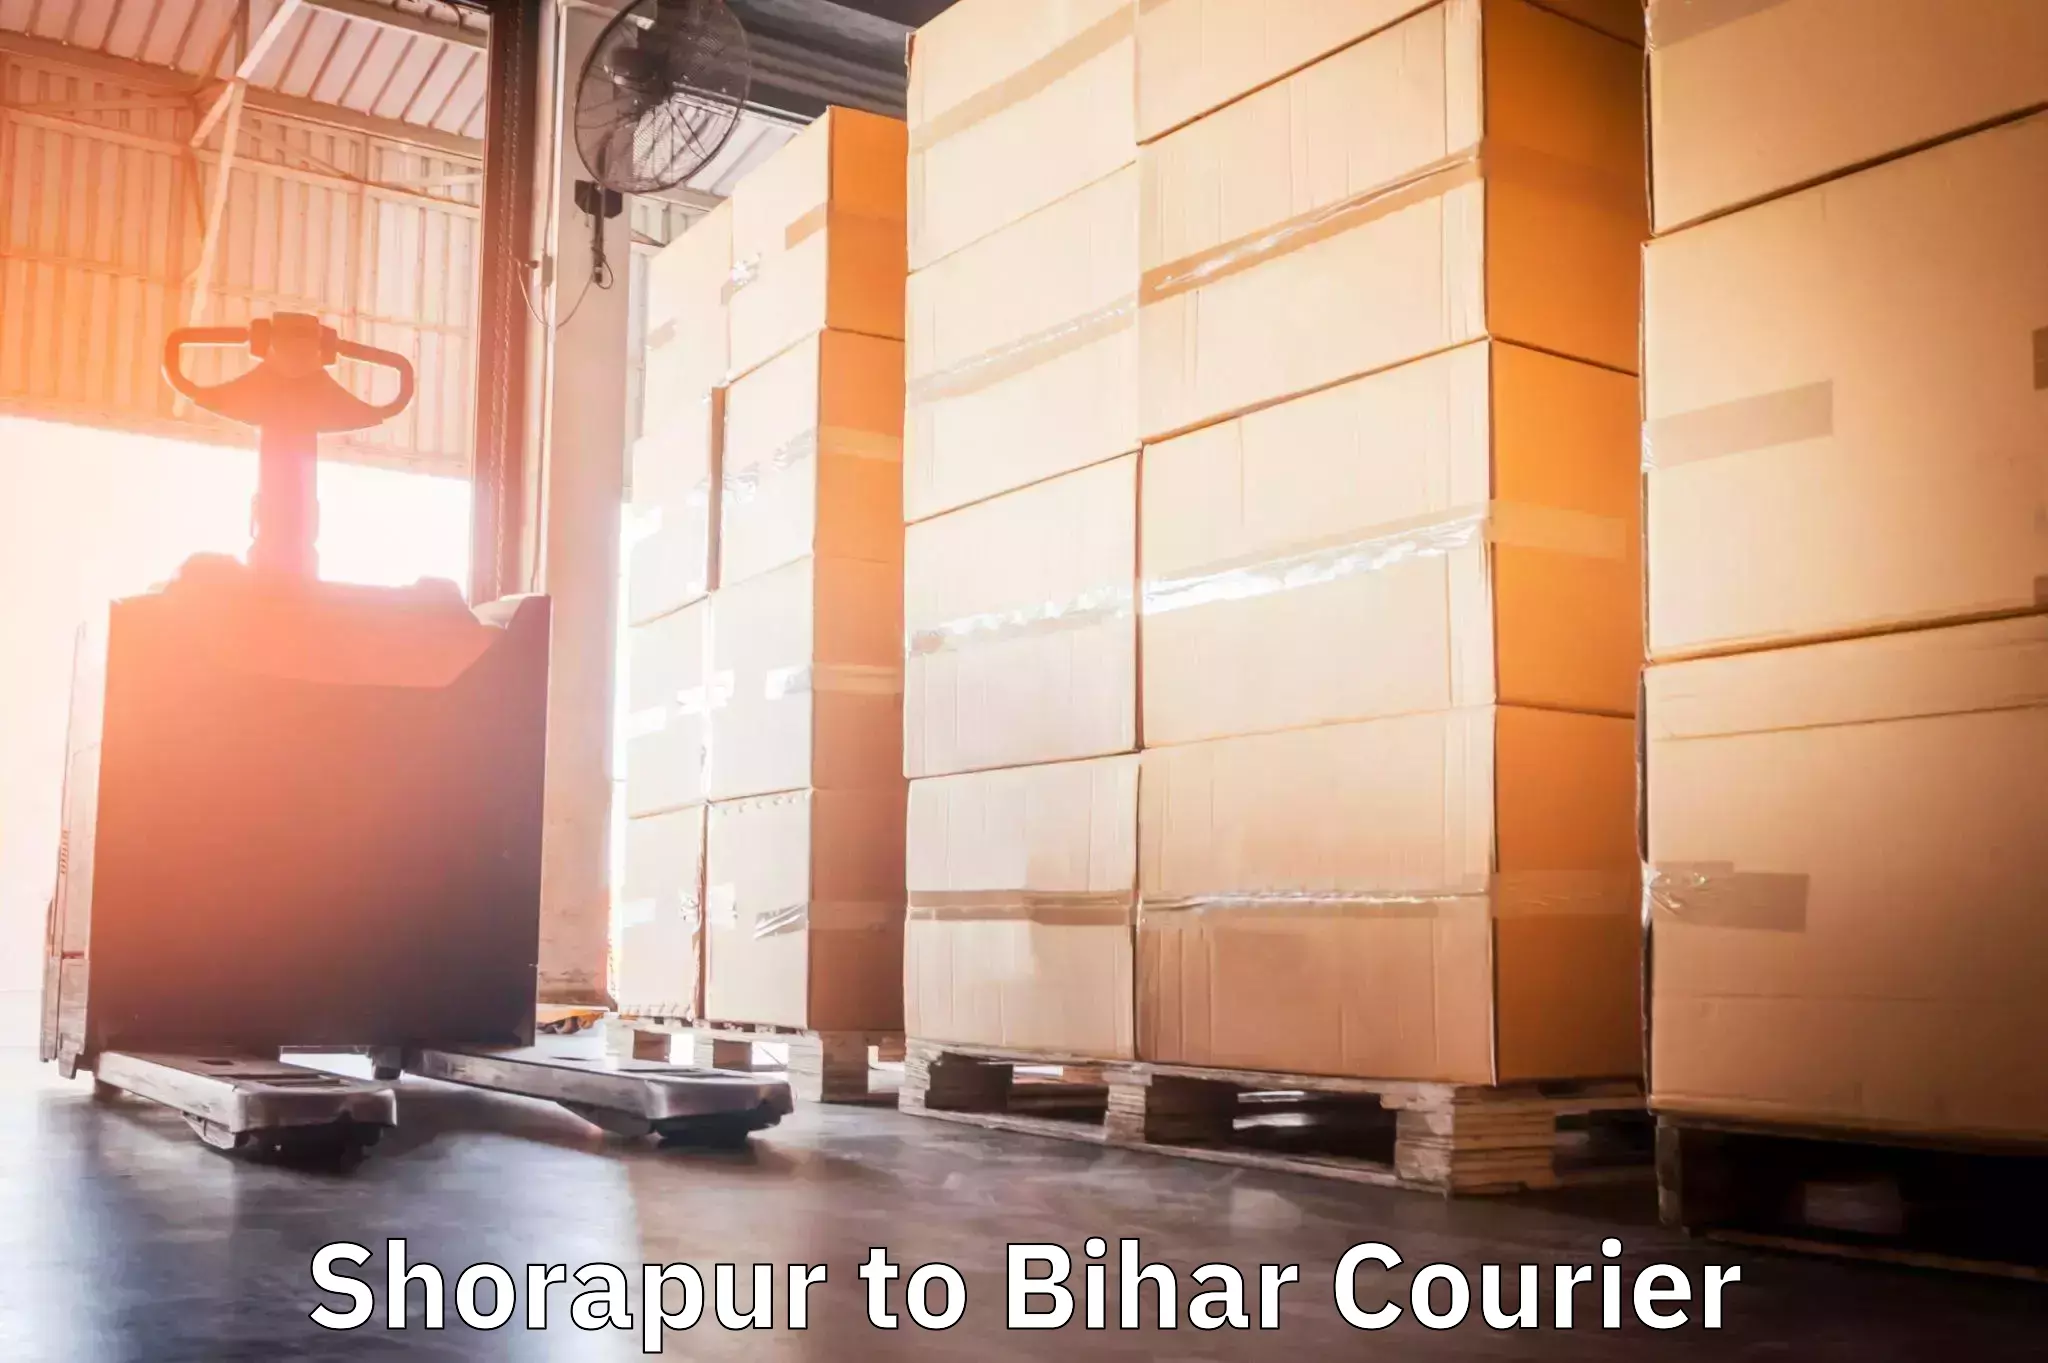 Personal parcel delivery Shorapur to Bihar